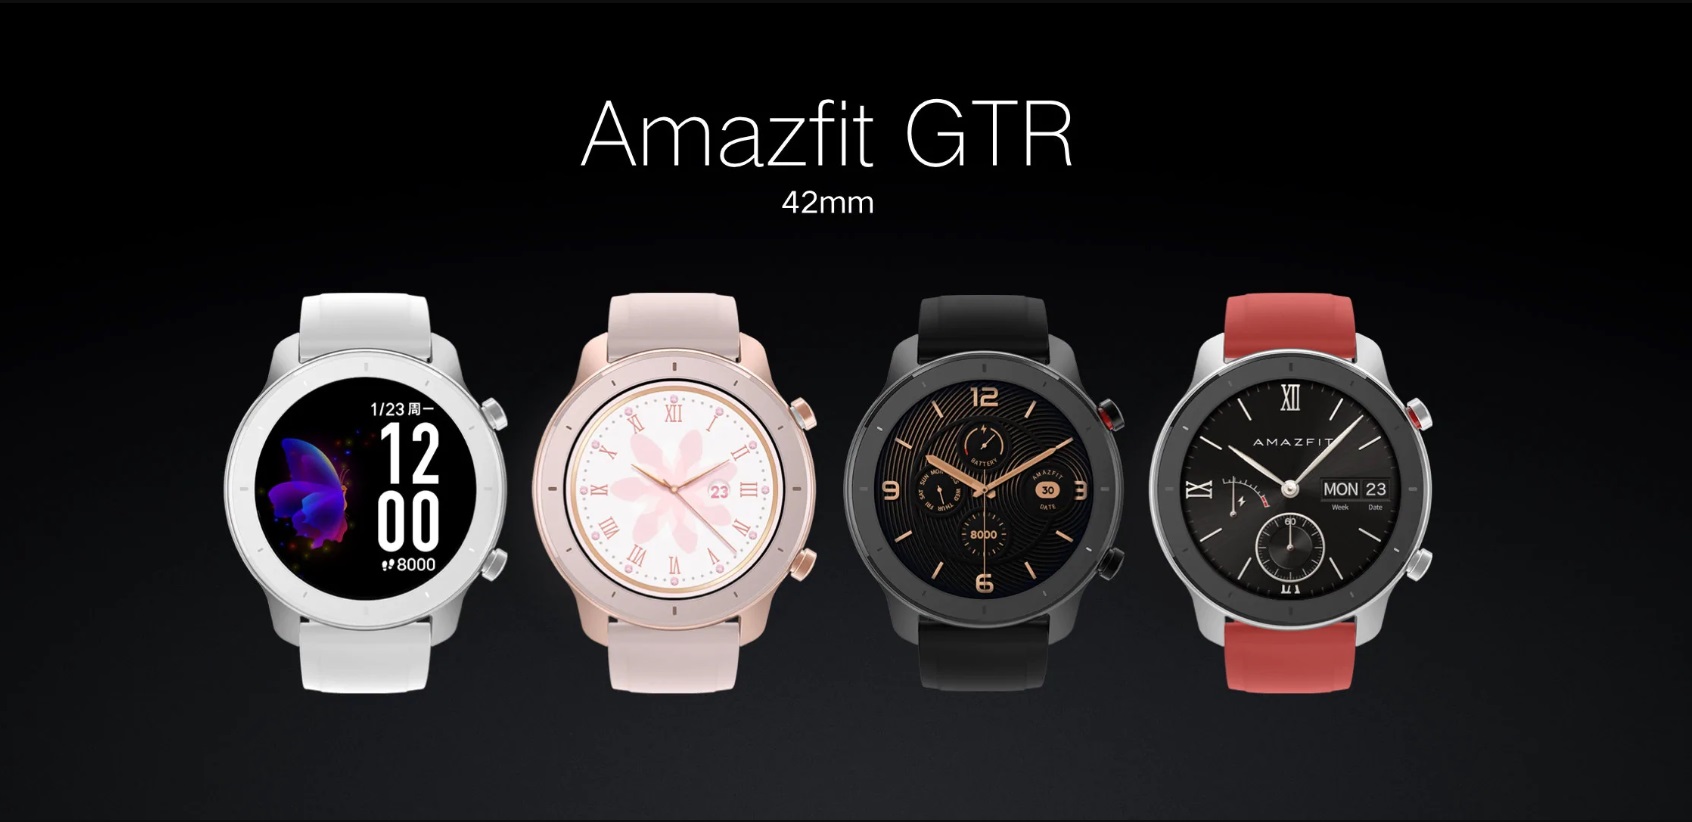 Представленные смарт-часы Amazfit GTR с невероятной автономностью и функционалом